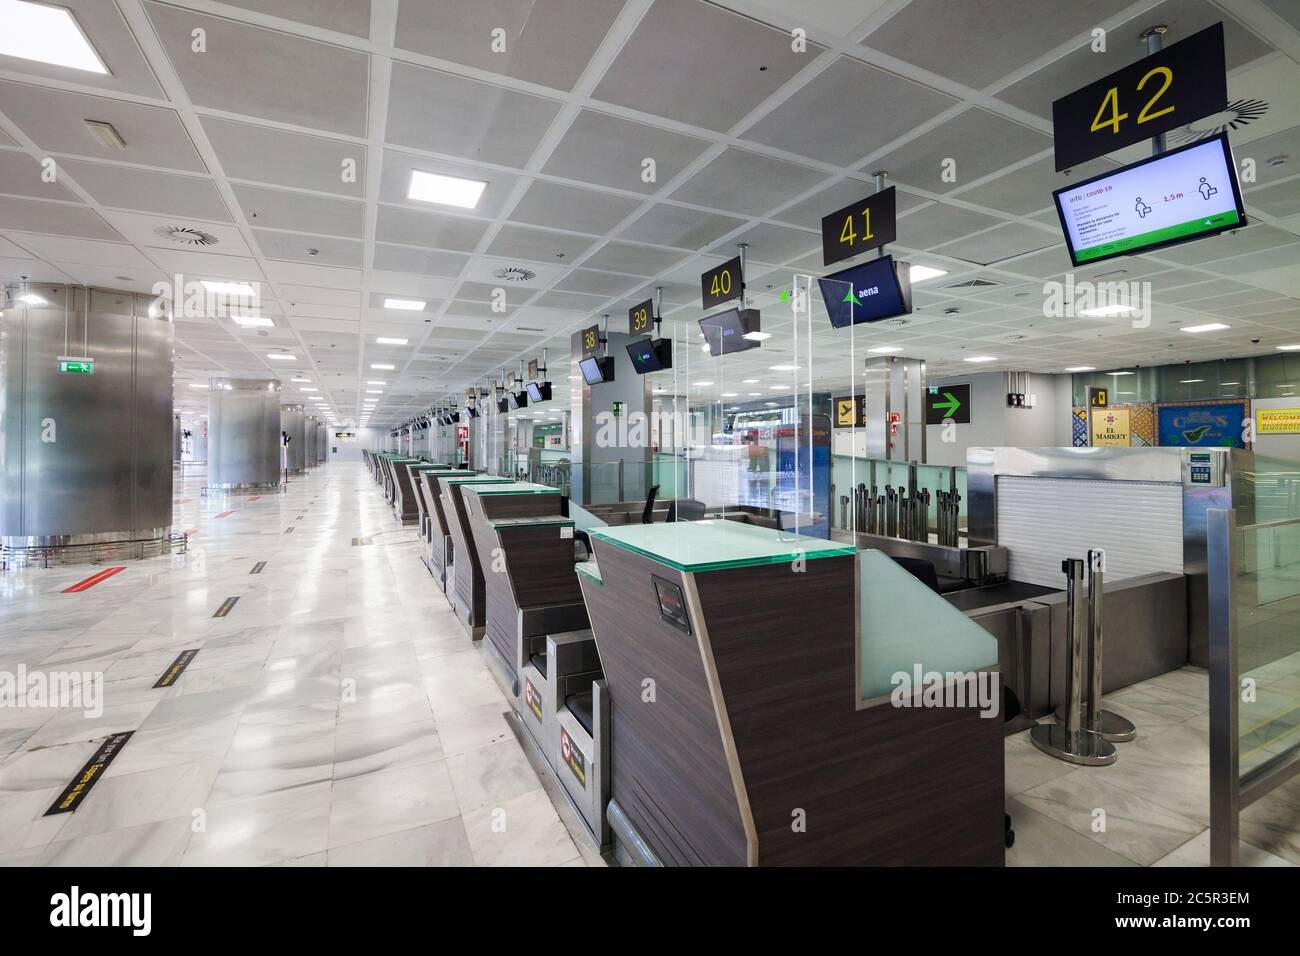 Vider les comptoirs d'enregistrement inutilisés, les ceintures de dépôt des bagages à l'aéroport de Tenerife Sud, la zone des départs, en raison des restrictions de voyage liées à l'épidémie de coronavirus Covid-19. Banque D'Images